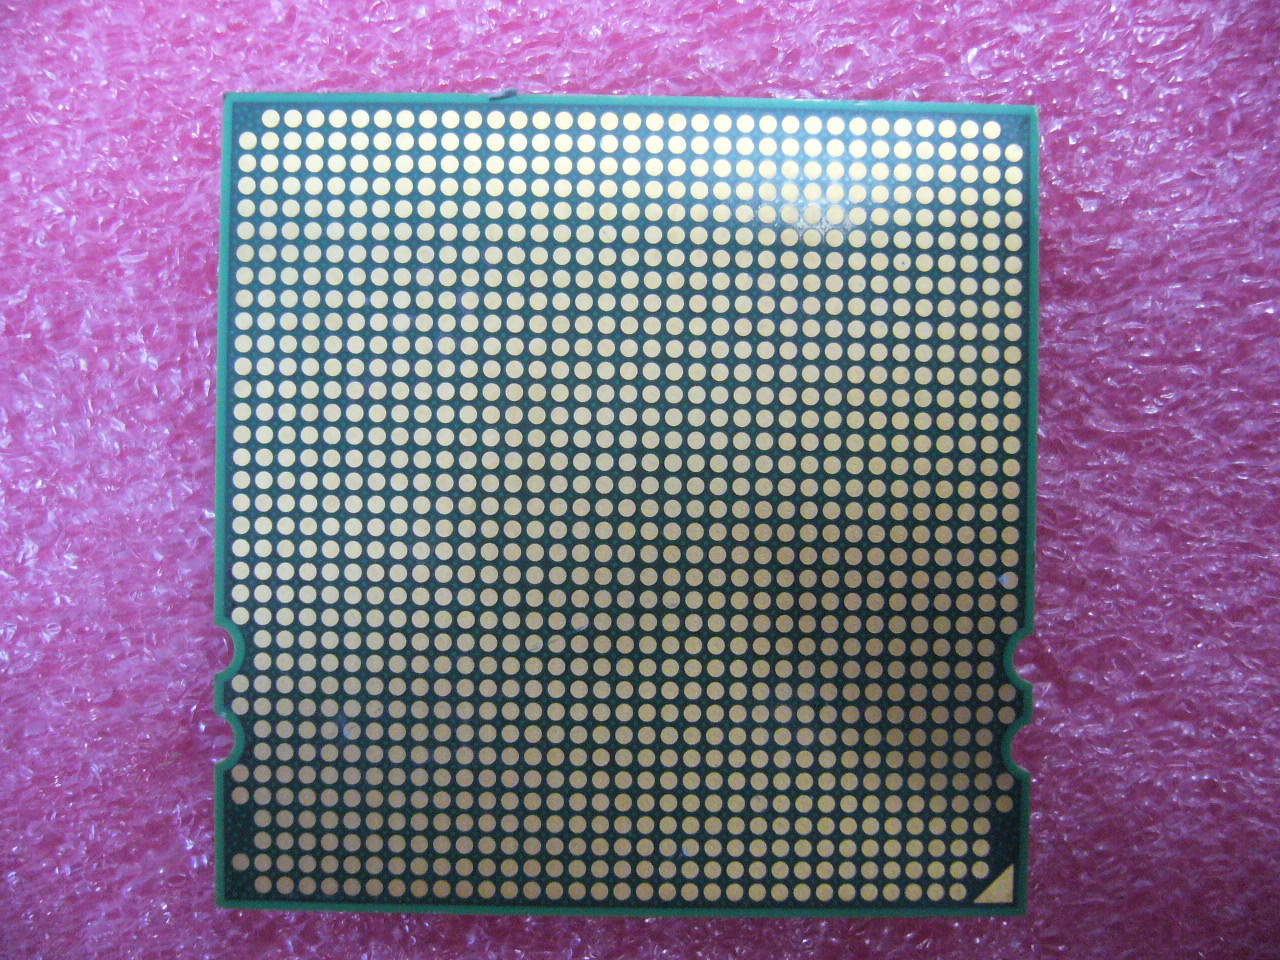 QTY 1x AMD Opteron 8393 SE 3.1 GHz Quad-Core (OS8393YCP4DGI) CPU Socket F 1207 - zum Schließen ins Bild klicken